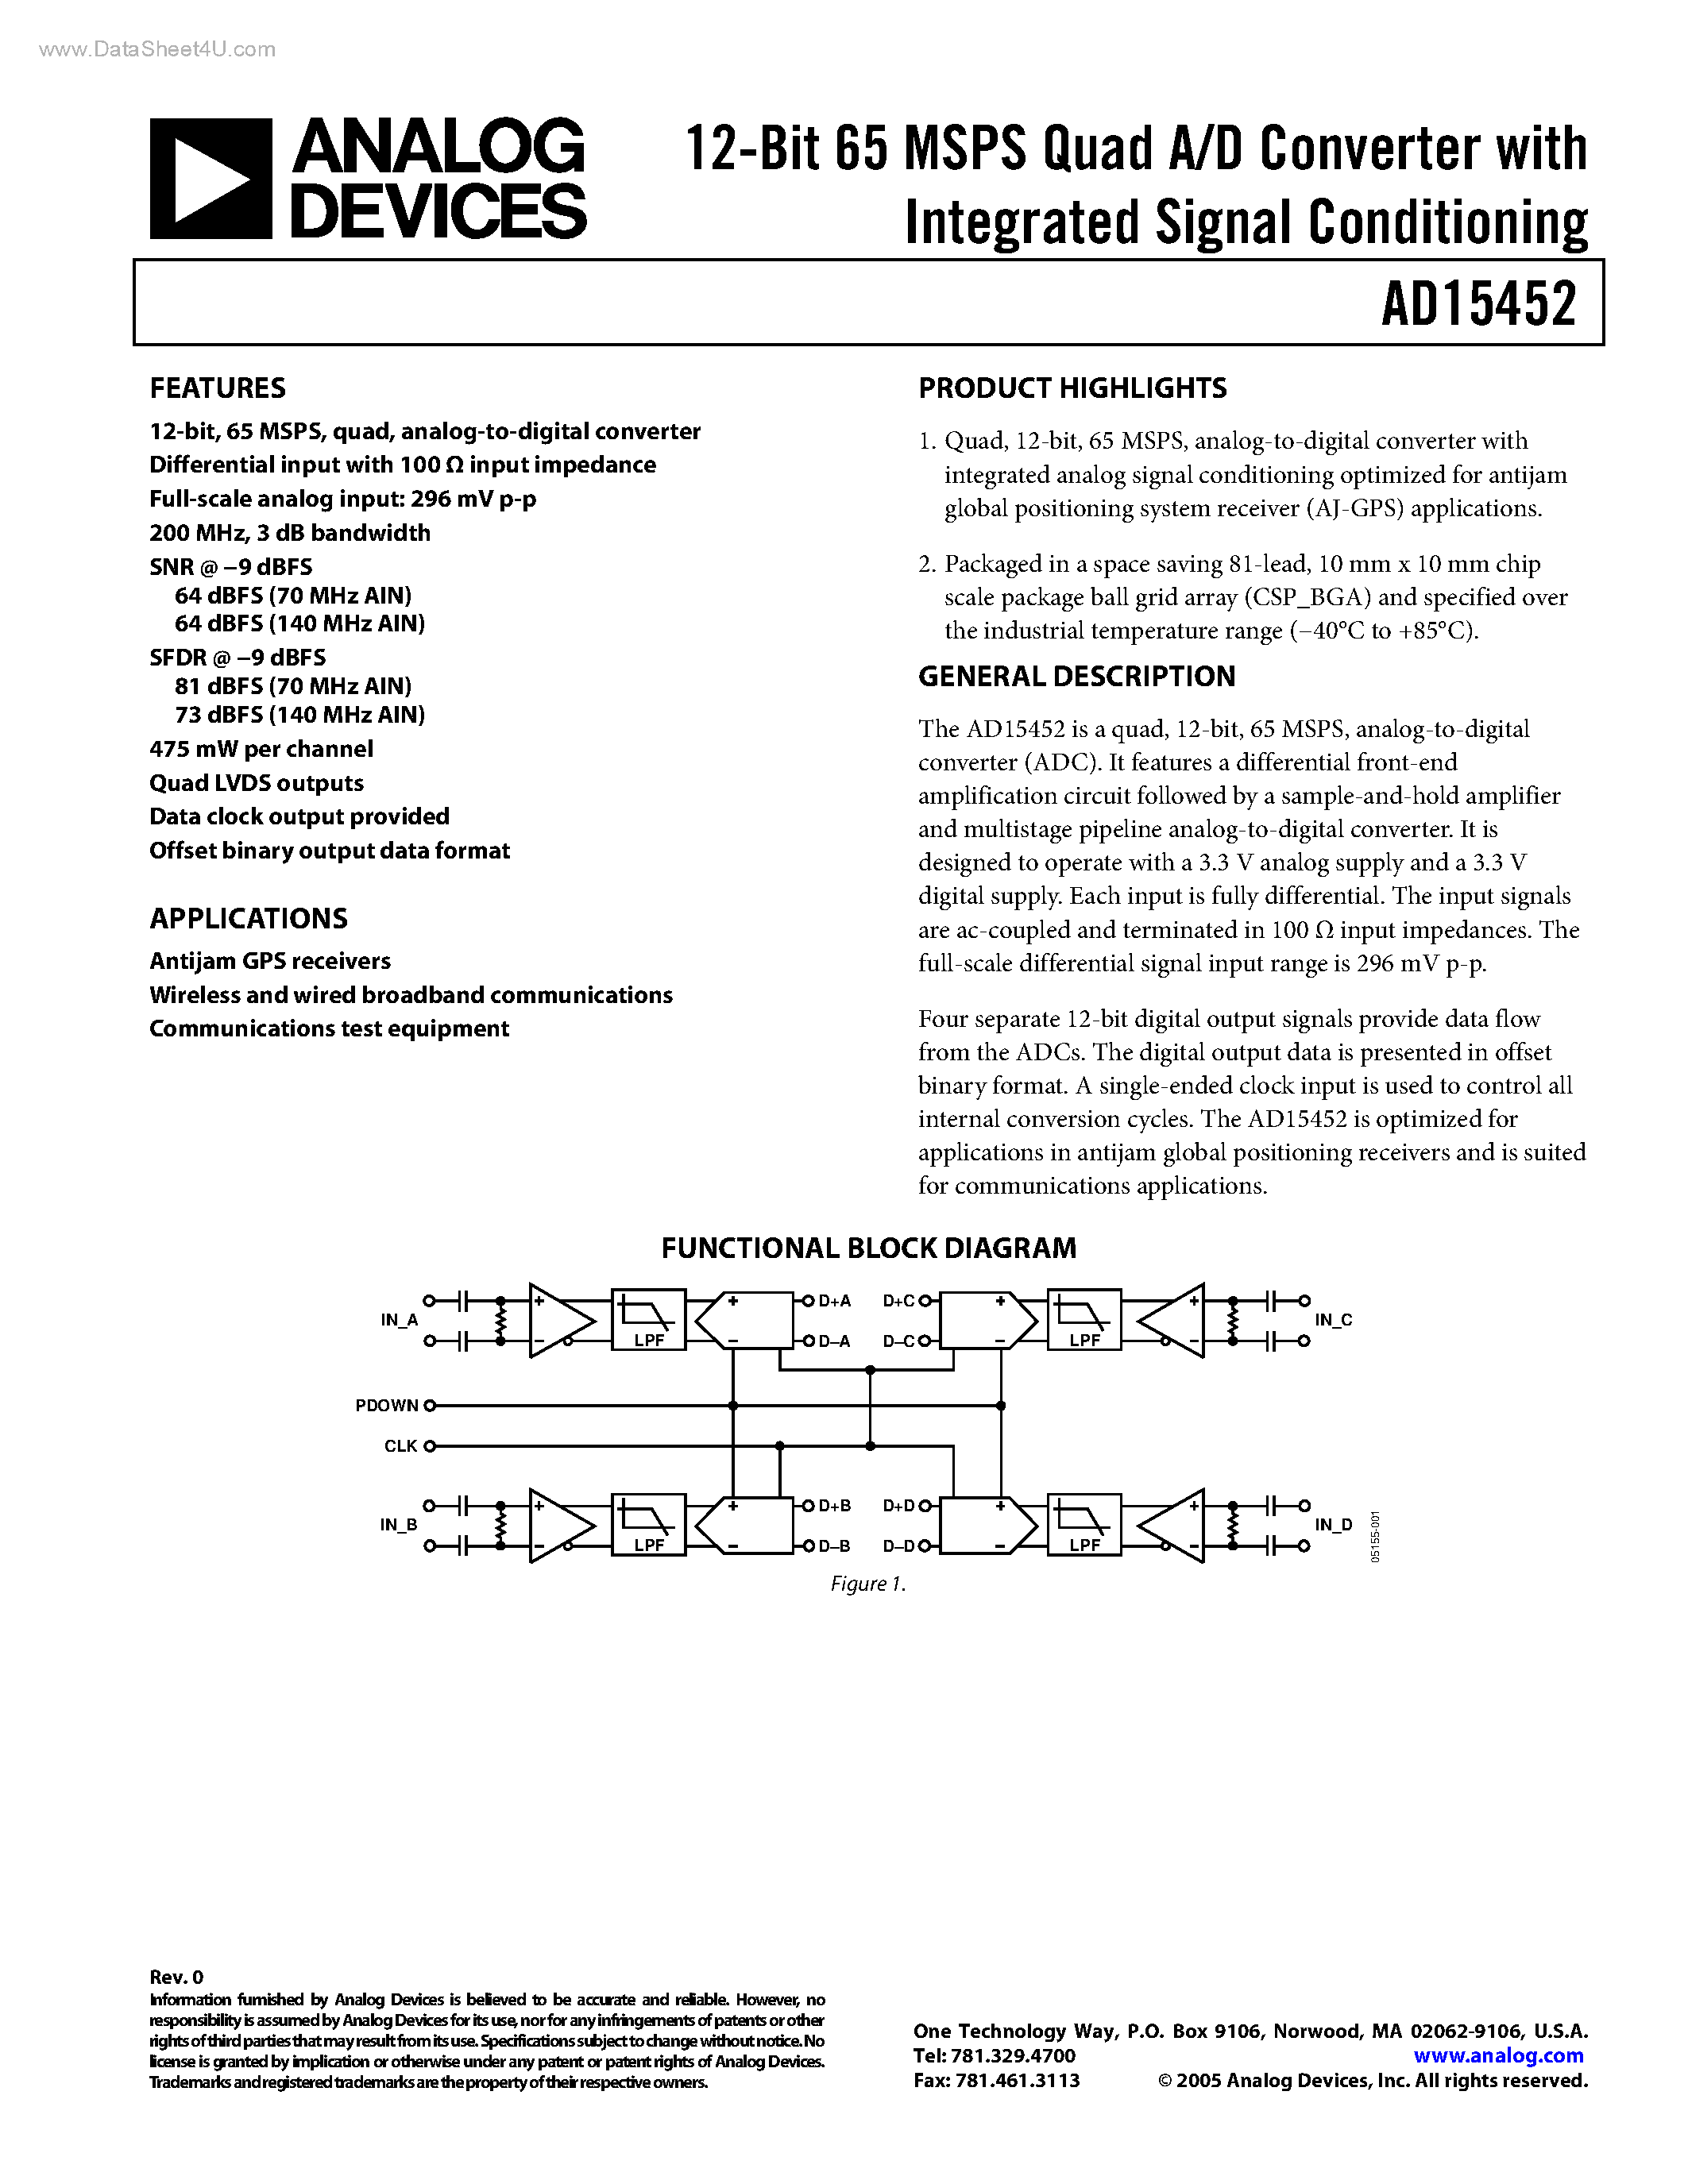 Даташит AD15452 - 12-Bit 65 MSPS Quad A/D Converter страница 1